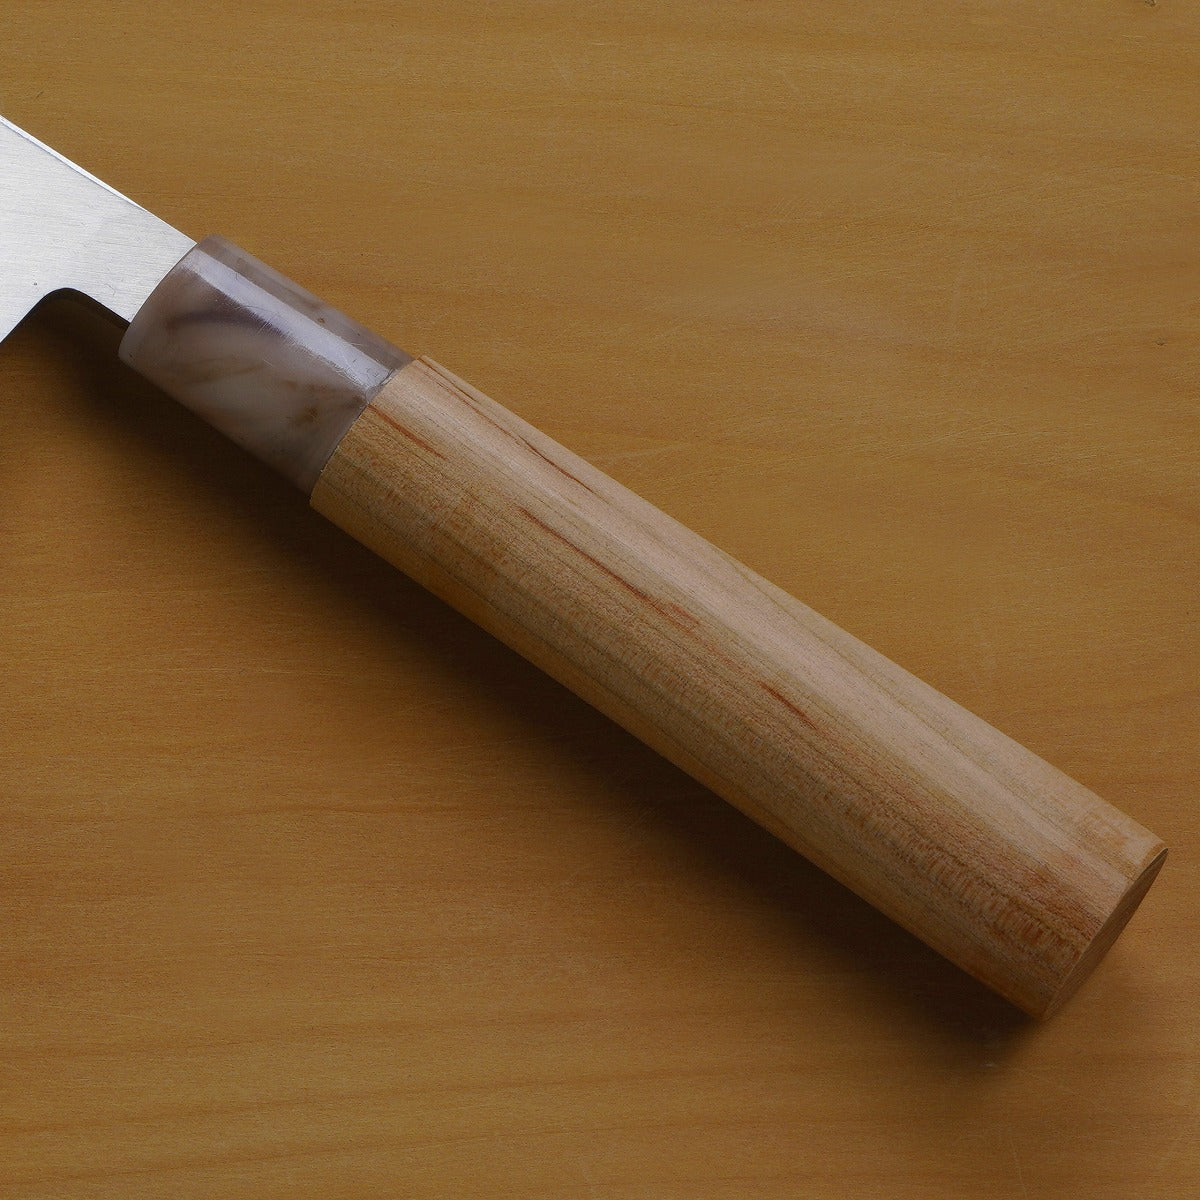 "SAKAI ICHIJI" Sashimi Knife Stainless Steel, 210mm